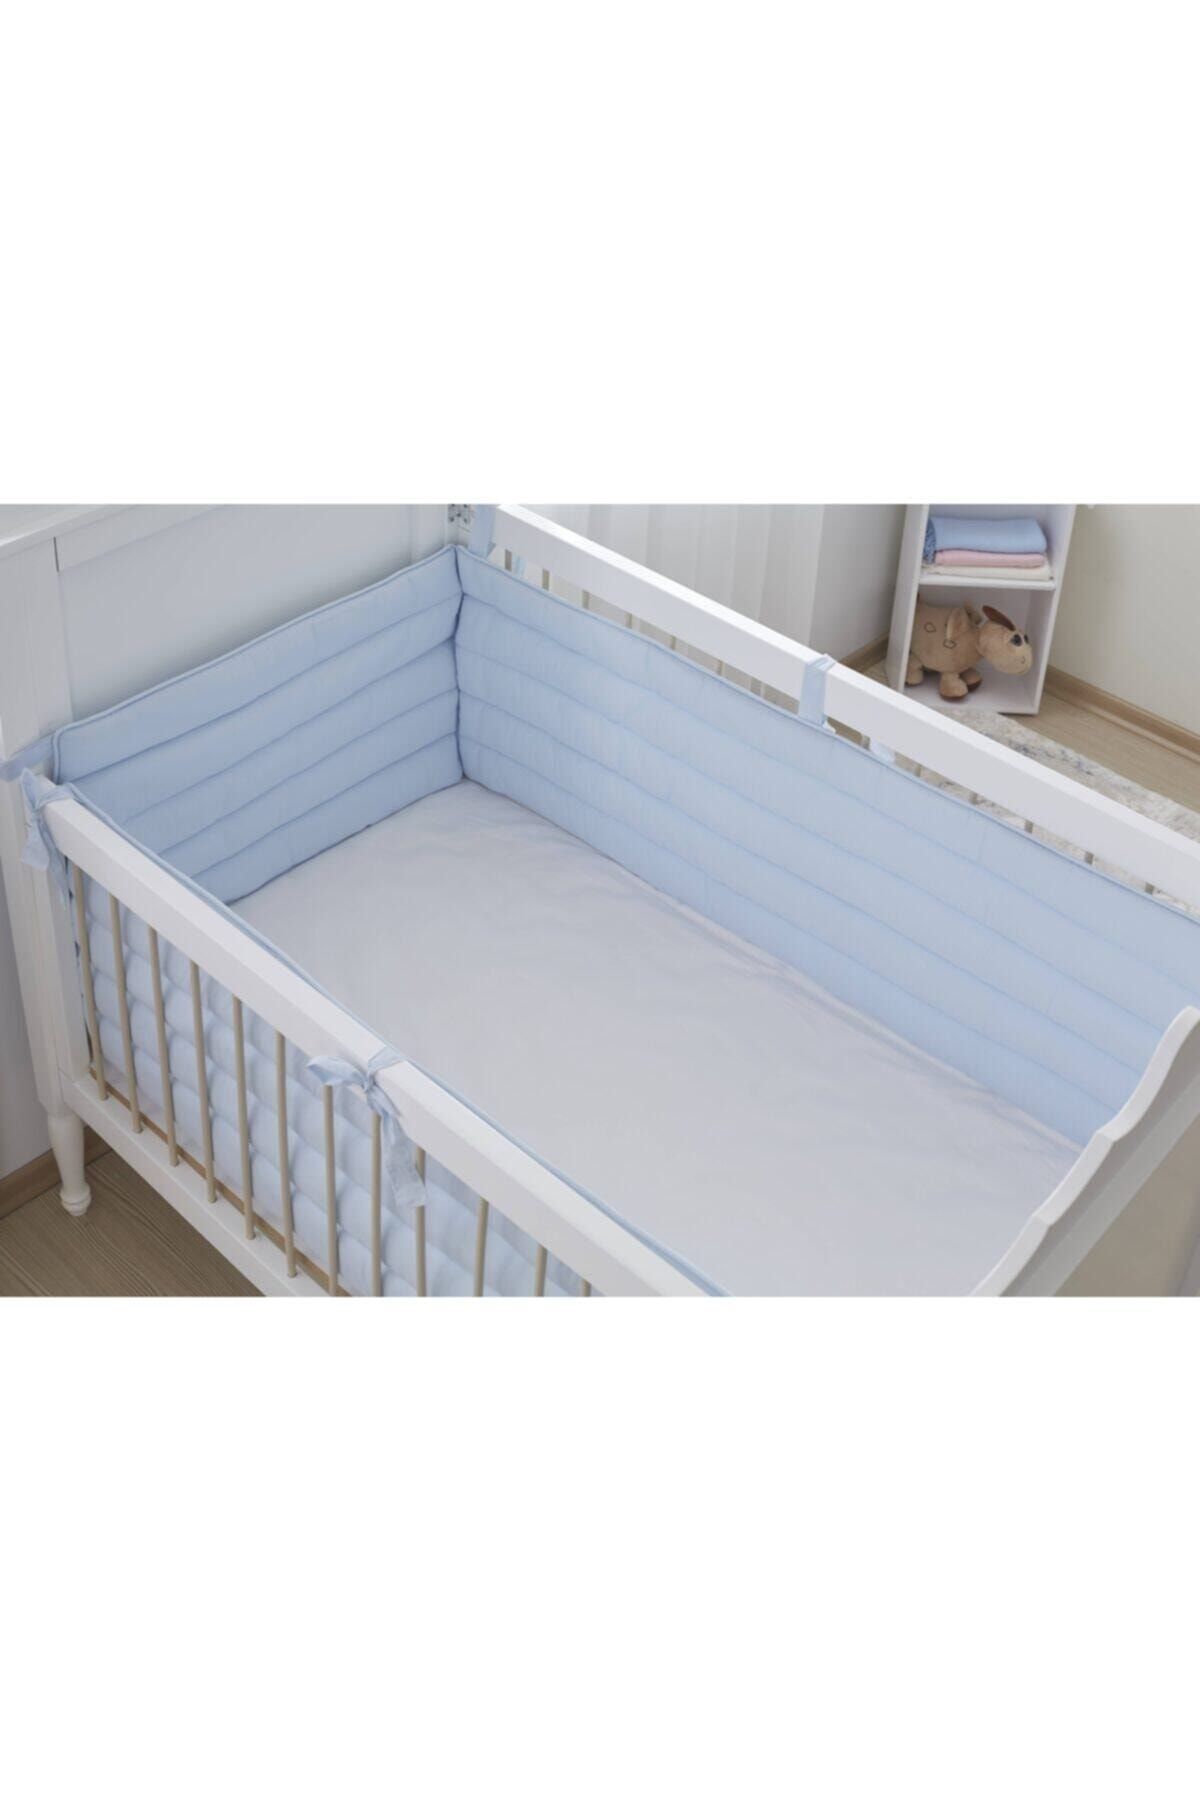 Aybi Baby Beşik Kenar Koruyucu Set 3 Parça - Mavi - 60x120 Cm